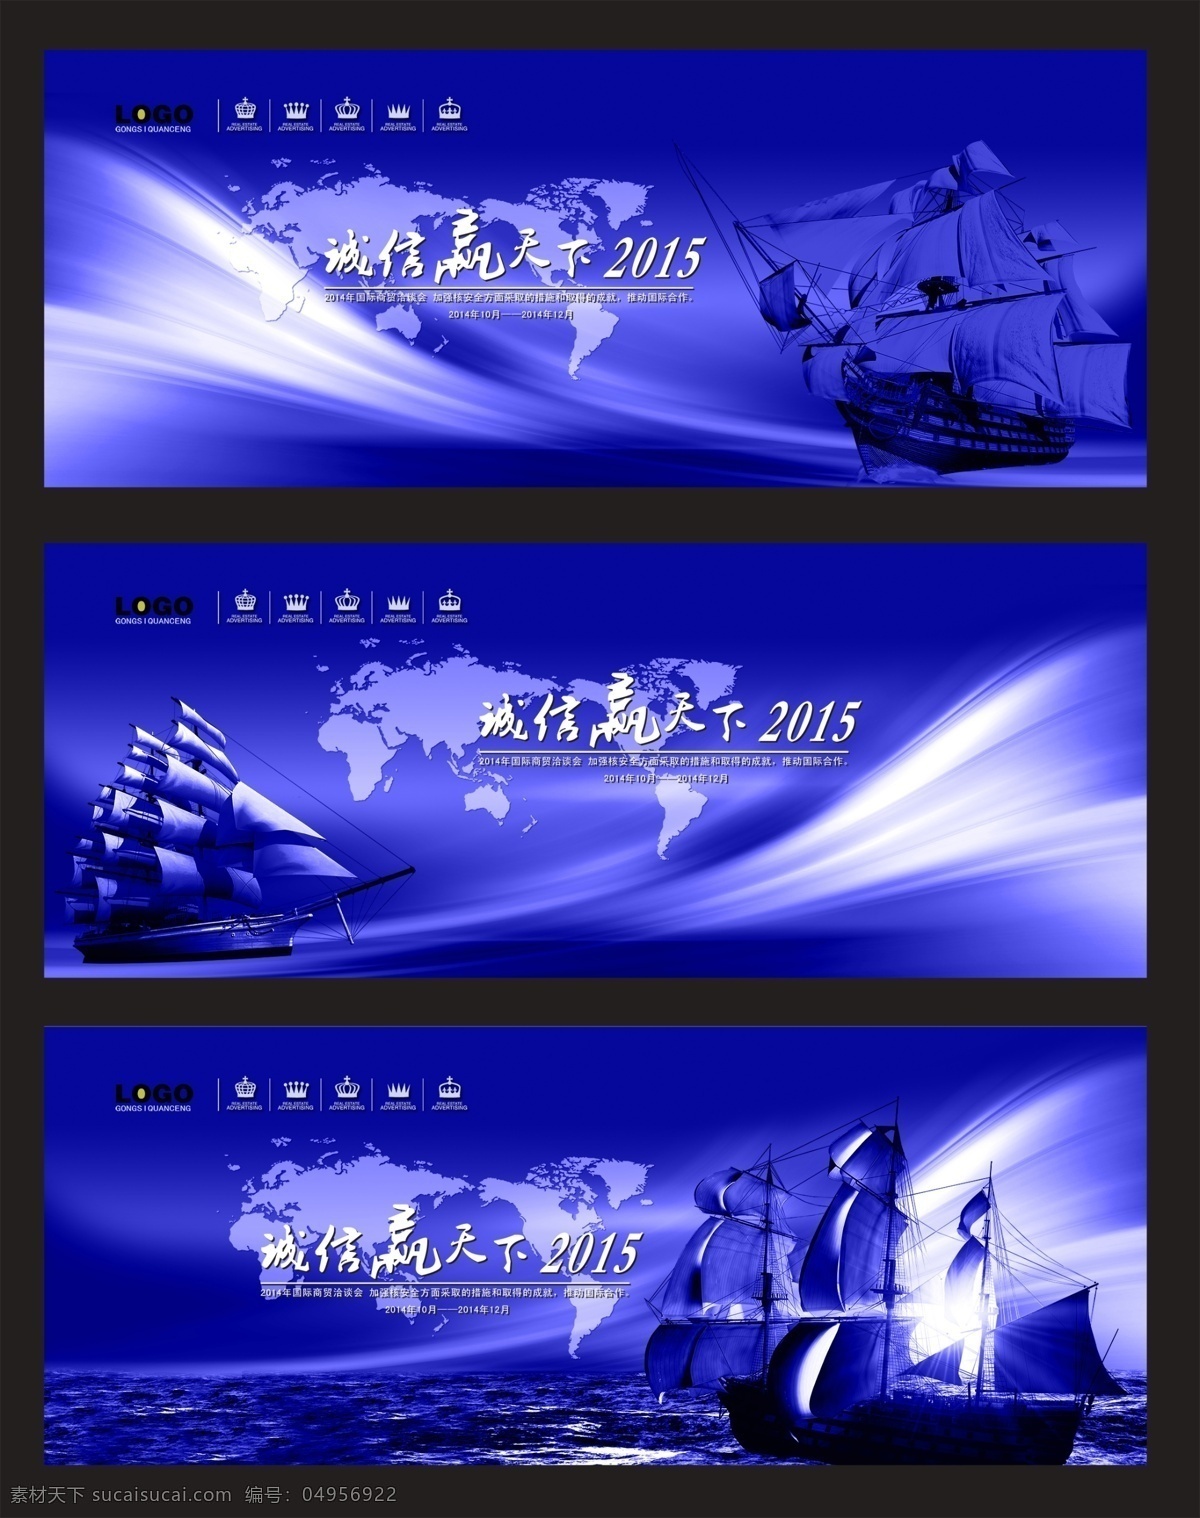 蓝色背景板 蓝色 紫色 背景板 海报 船 会议海报 会议背景板 光线 帆船 世界地图 紫色海报